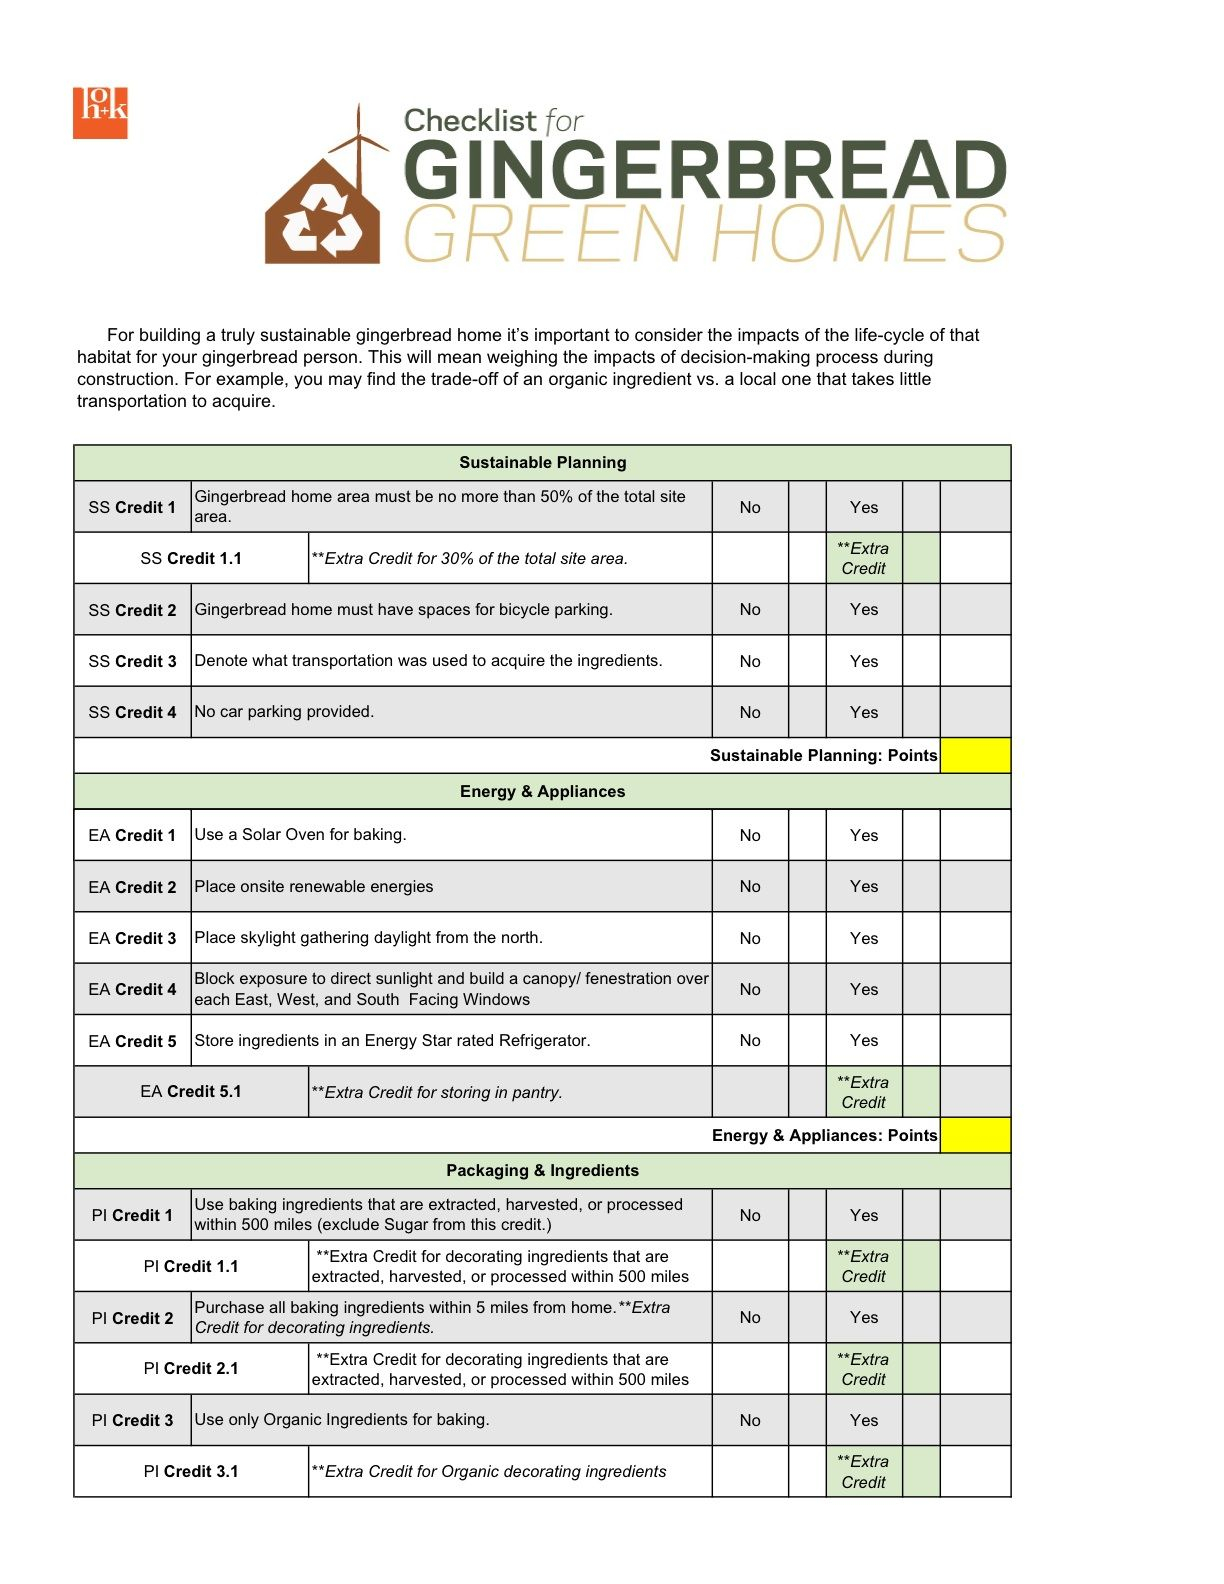 Interior Design Checklist For New Home Intended For Interior Design Checklist Template